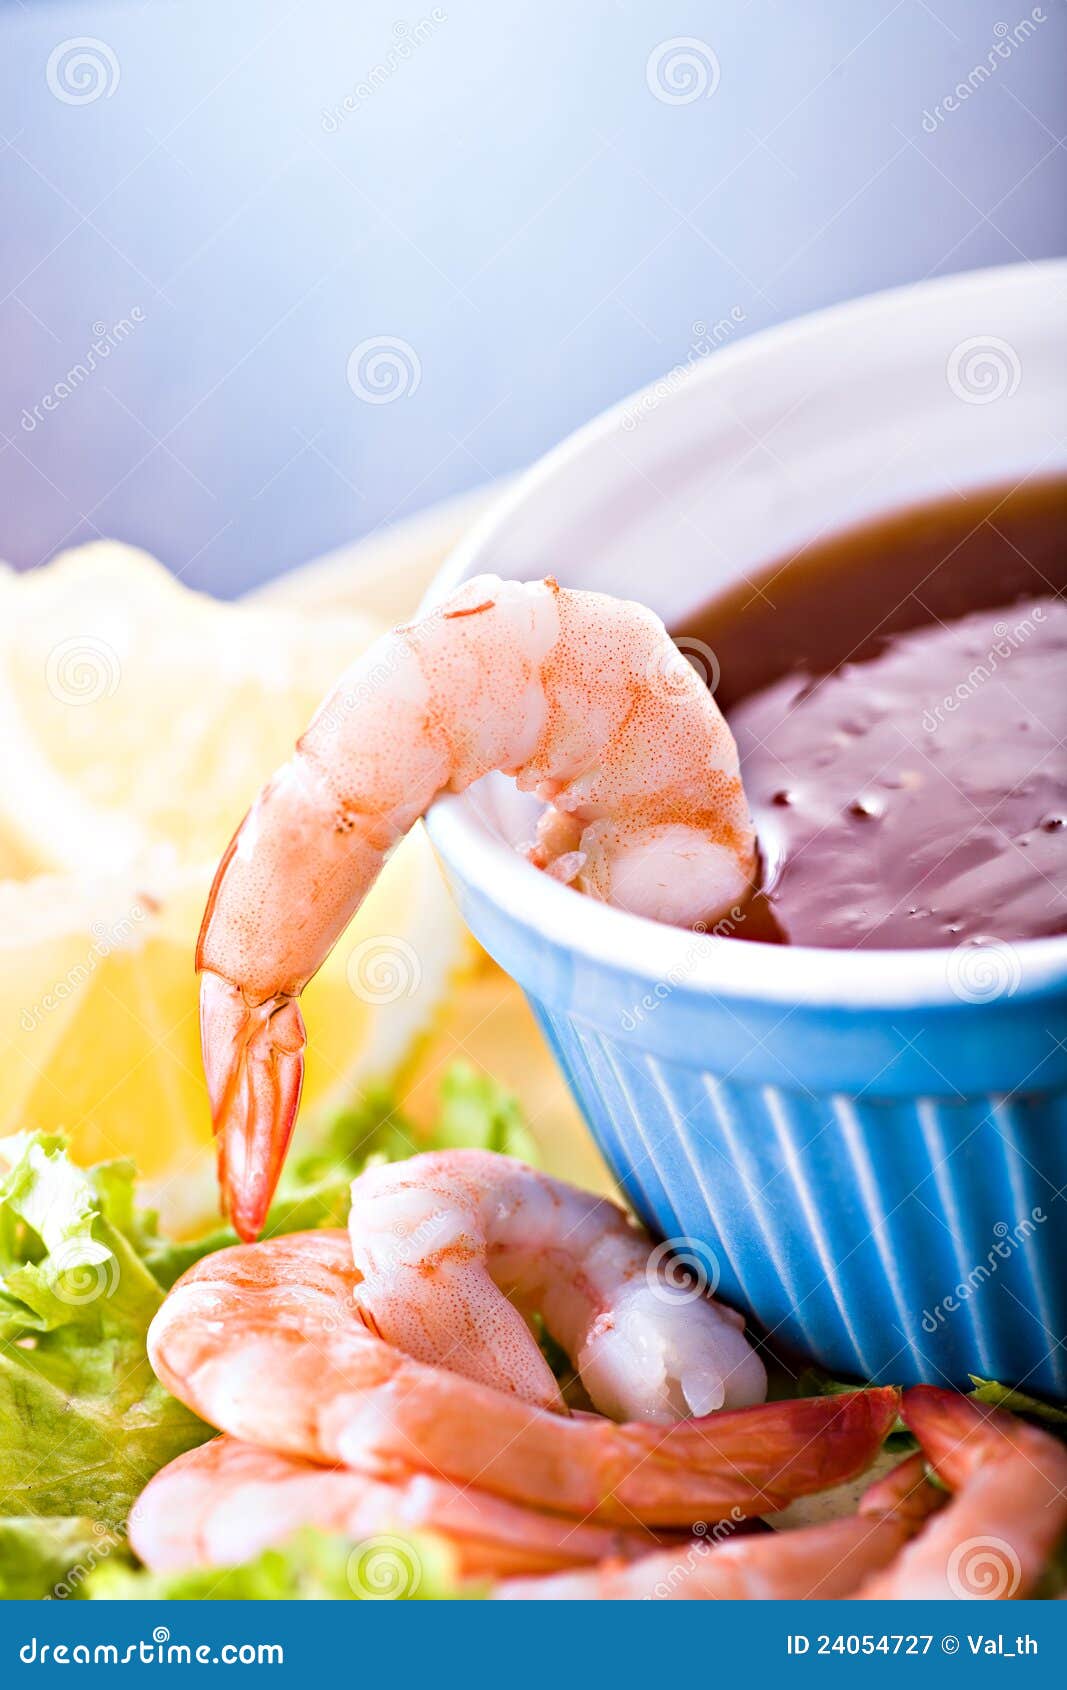 Shrimps. Close up shot of a shrimp salad